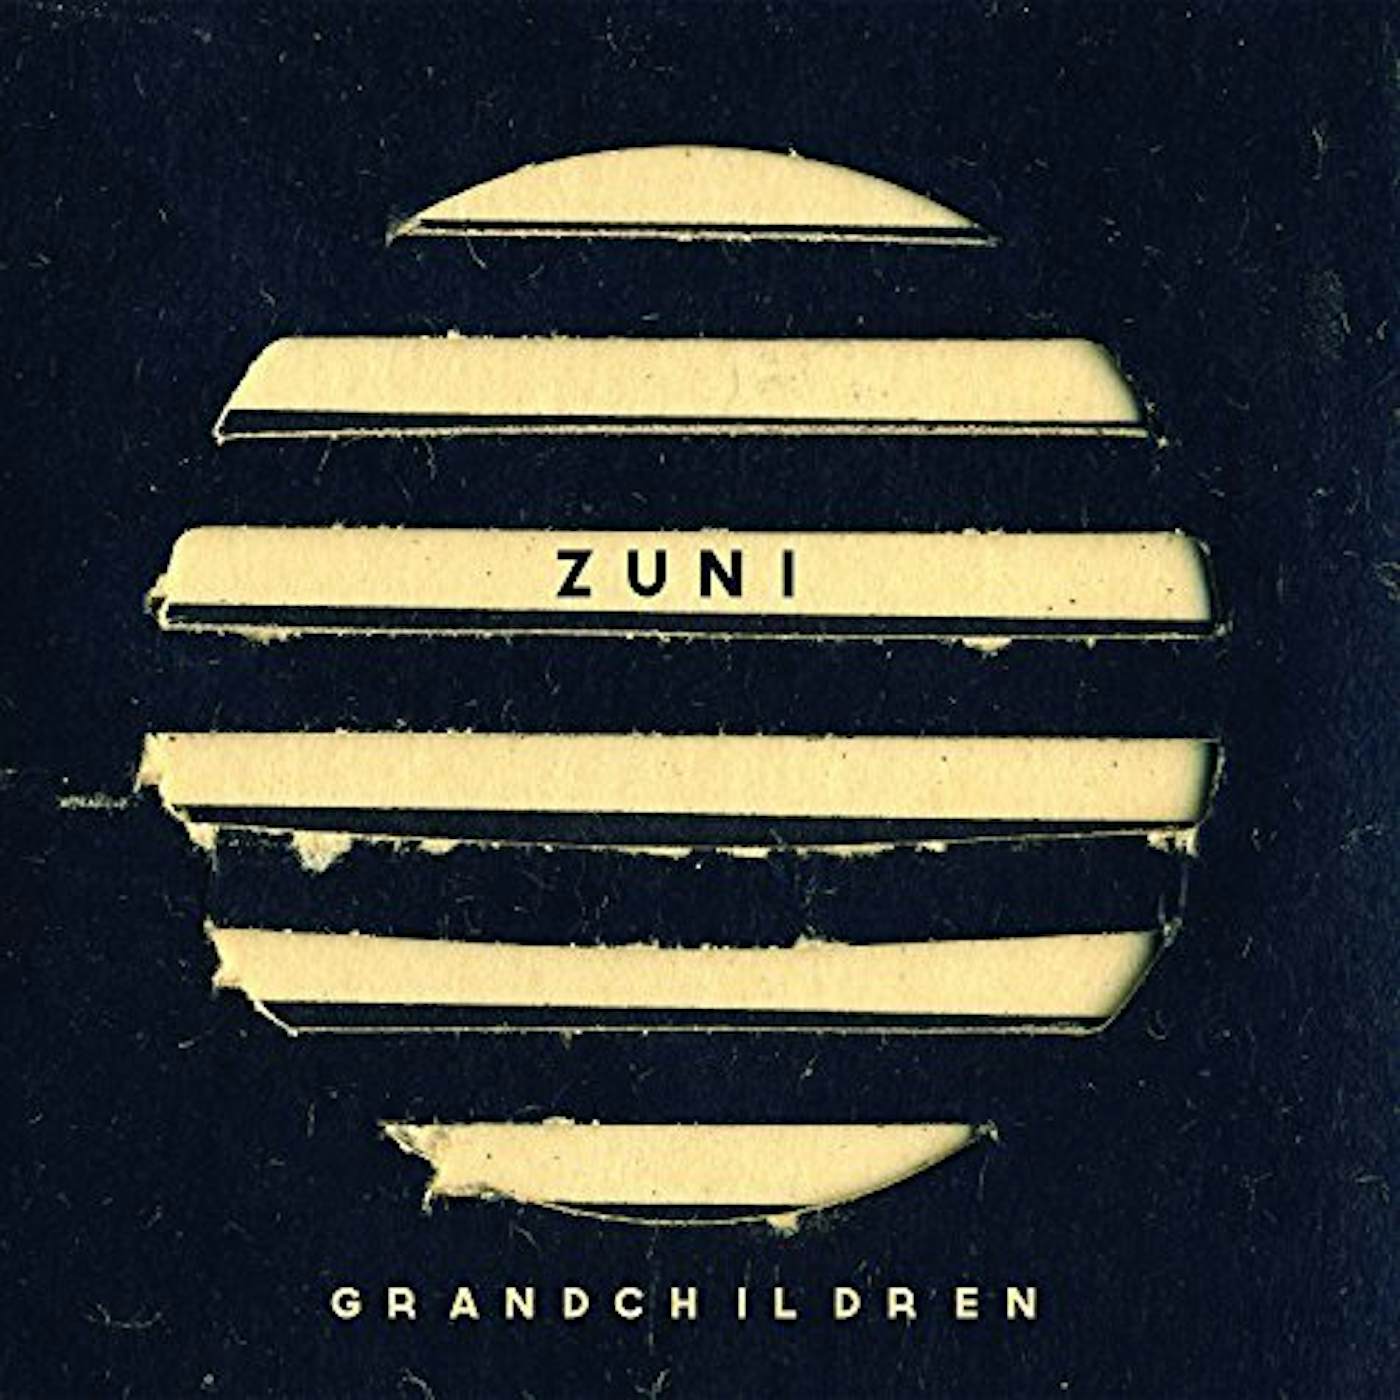 Grandchildren Zuni Vinyl Record